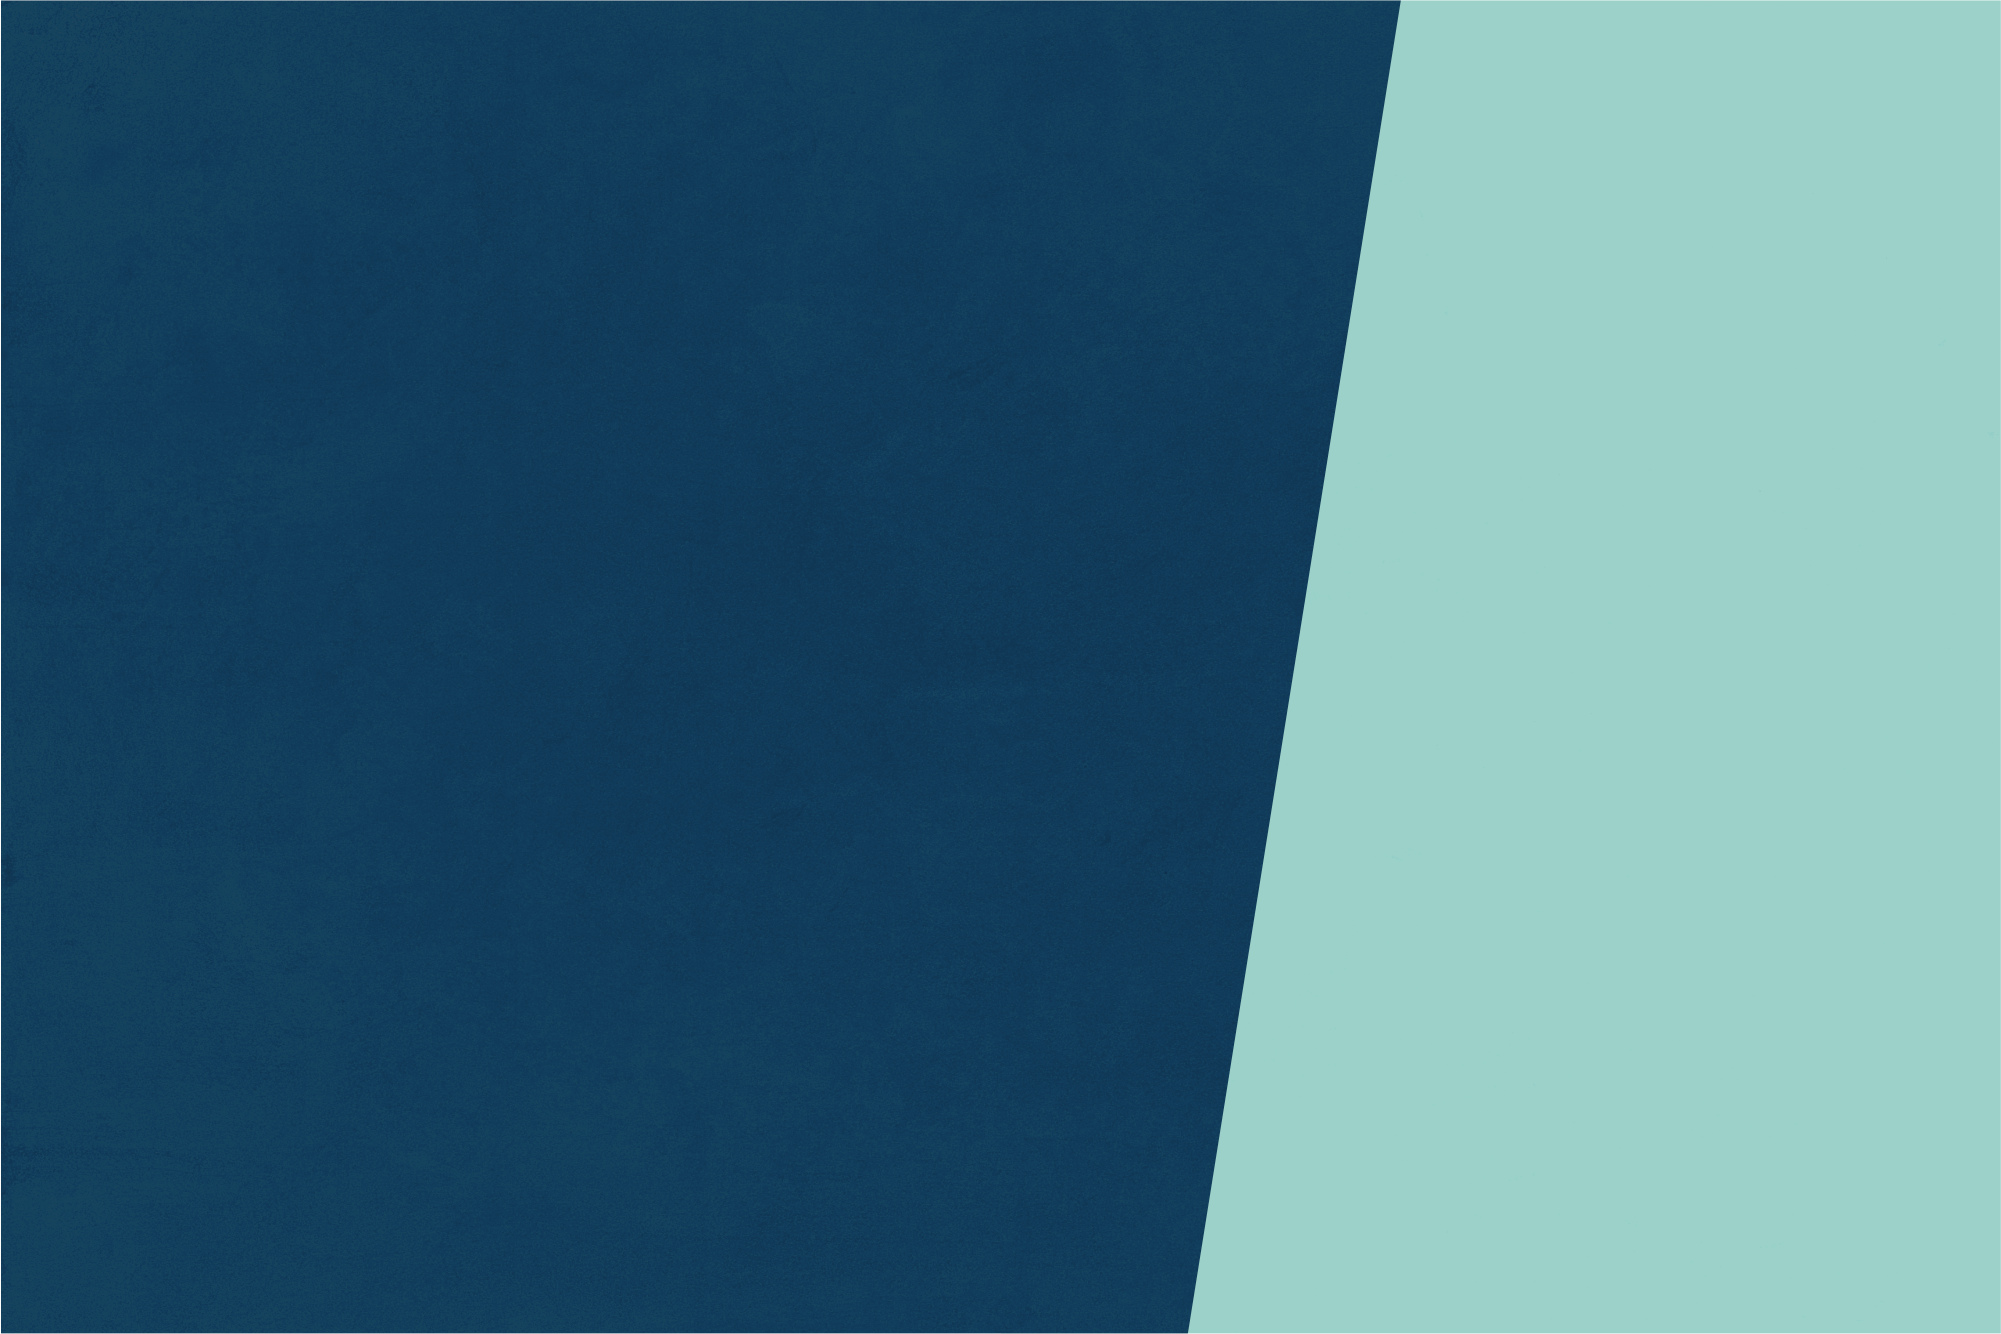 Ein Bild mit der Farbkombination Dunkles Mitternachtsblau und Sanftes Meeresgrün